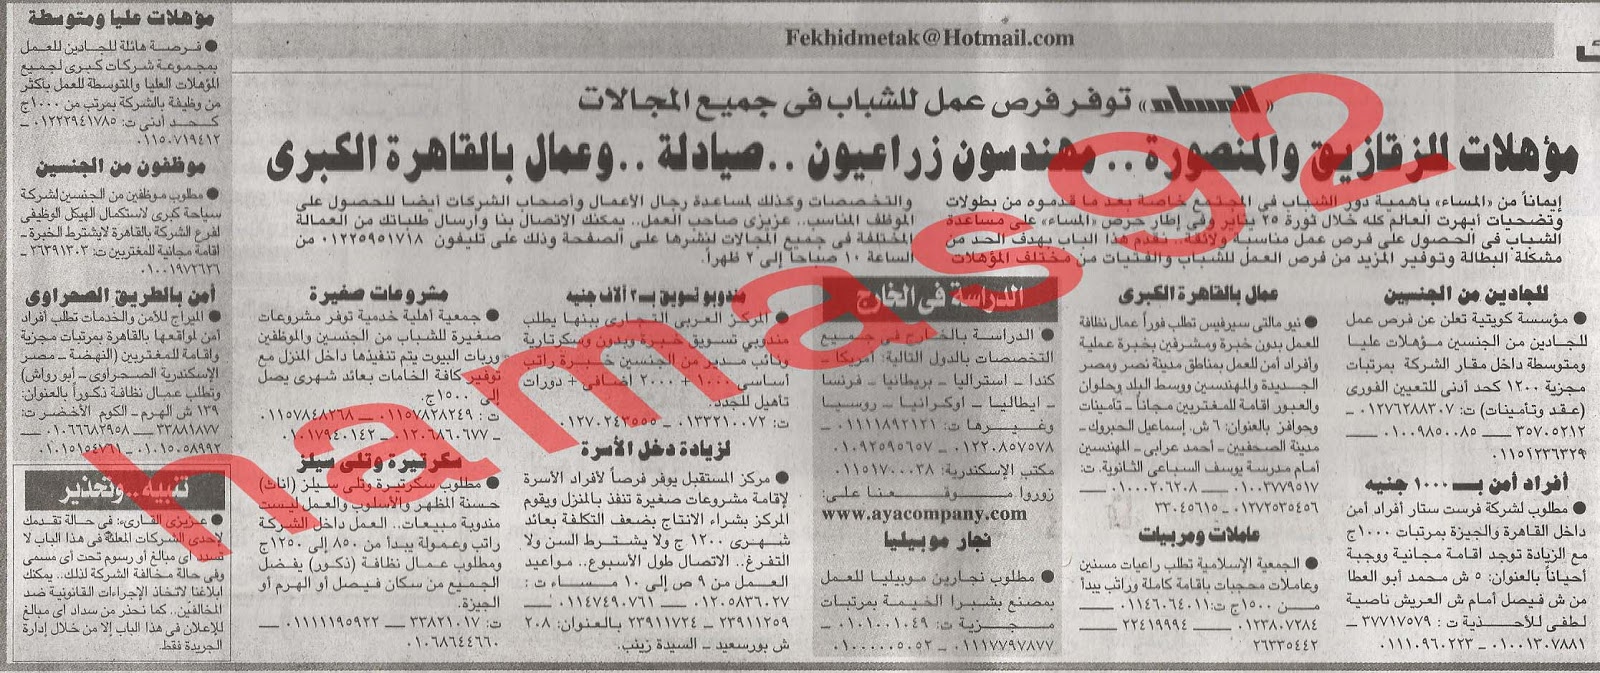 وظائف خالية من جريدة المساء المصرية اليوم السبت 23/2/2013 %D8%A7%D9%84%D9%85%D8%B3%D8%A7%D8%A1+3